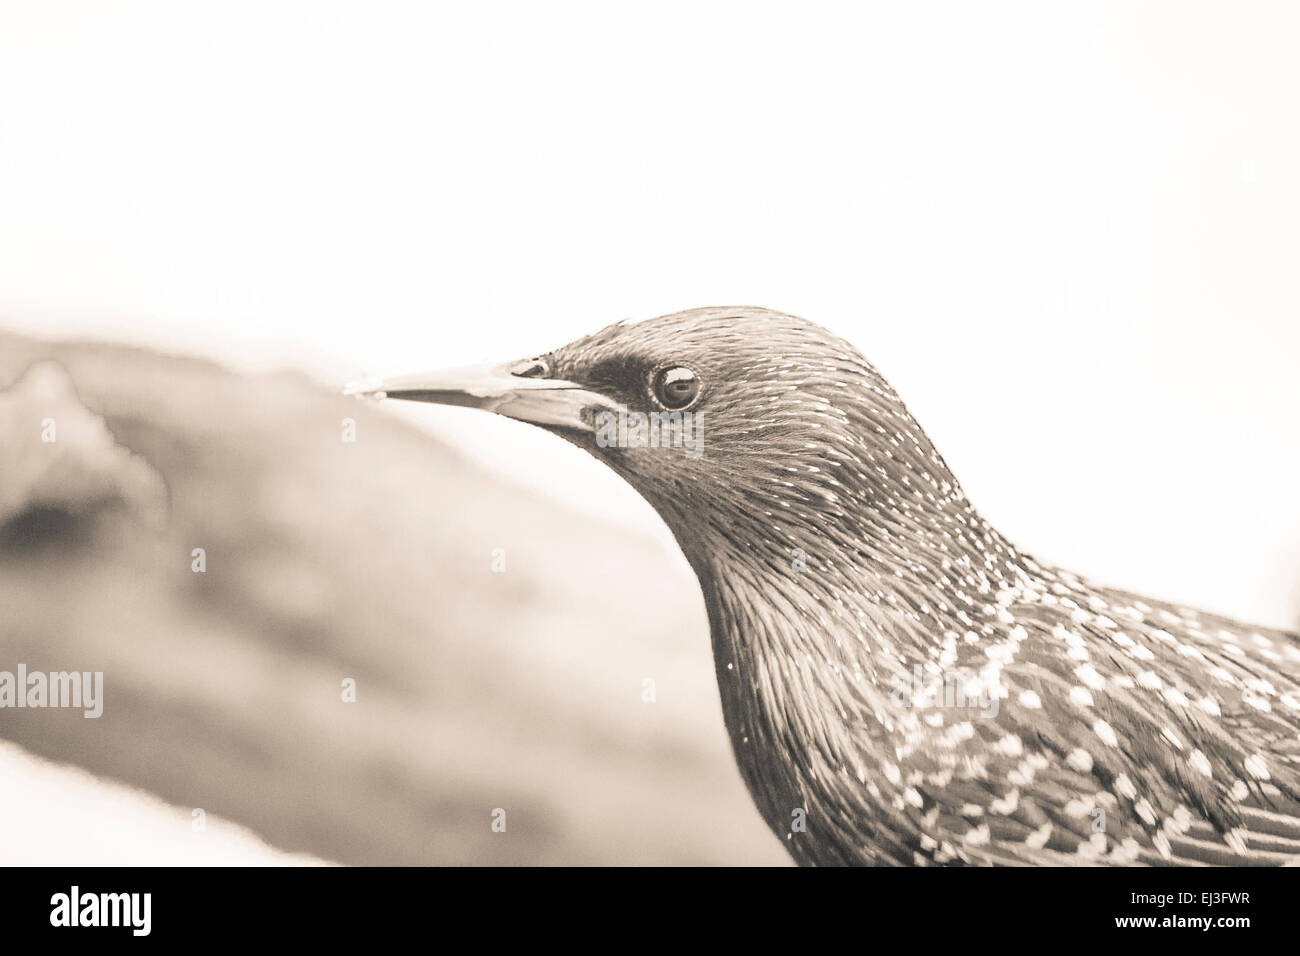 L'image monochrome légèrement teinté de starling close up avec effet vintage duo tone Banque D'Images